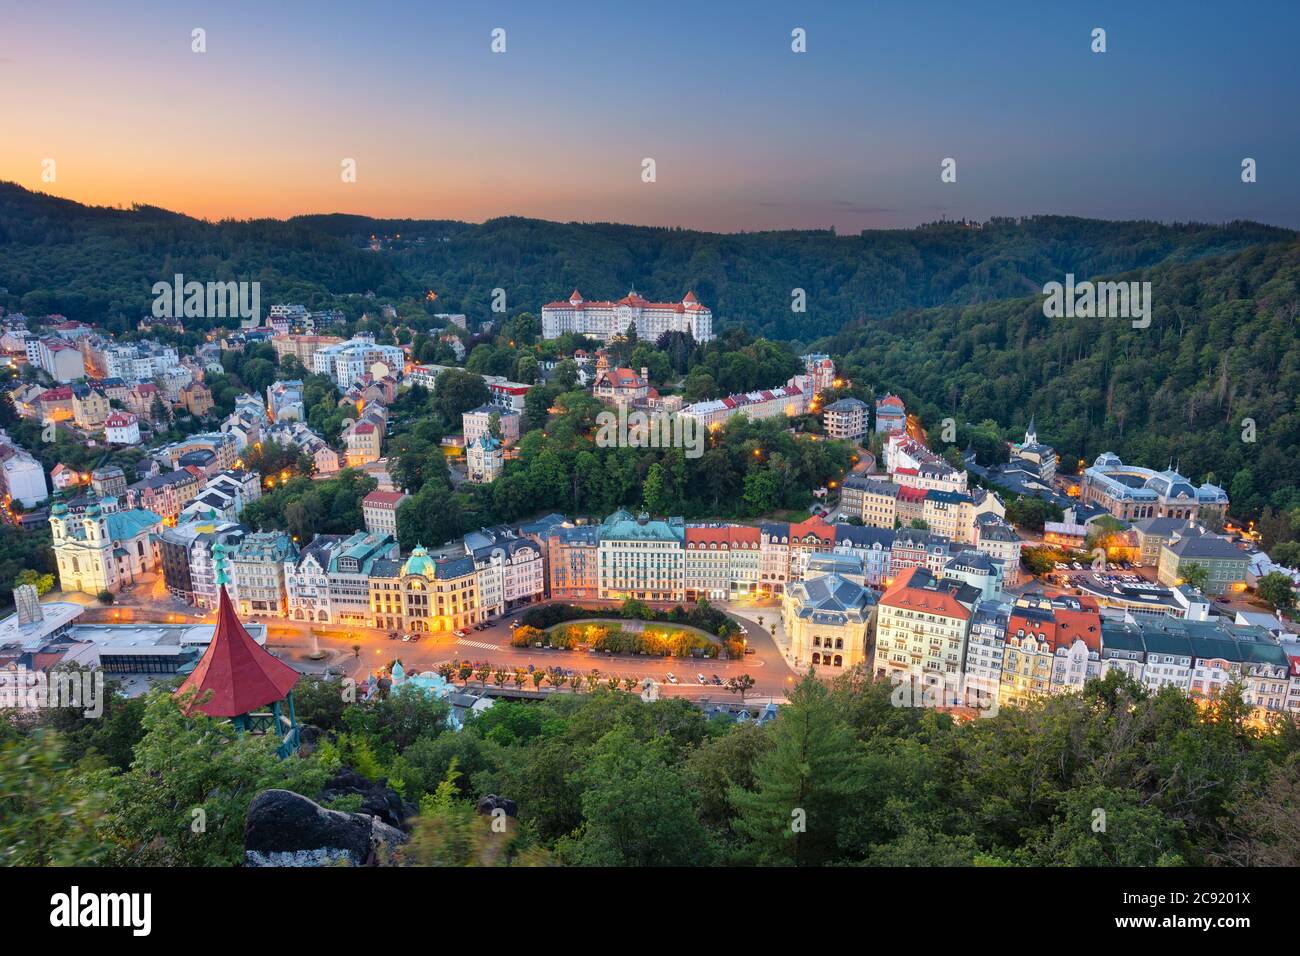 Karlovy Vary, Repubblica Ceca. Immagine aerea di Karlovy Vary (Carlsbad), situato nella Boemia occidentale, all'alba. Foto Stock